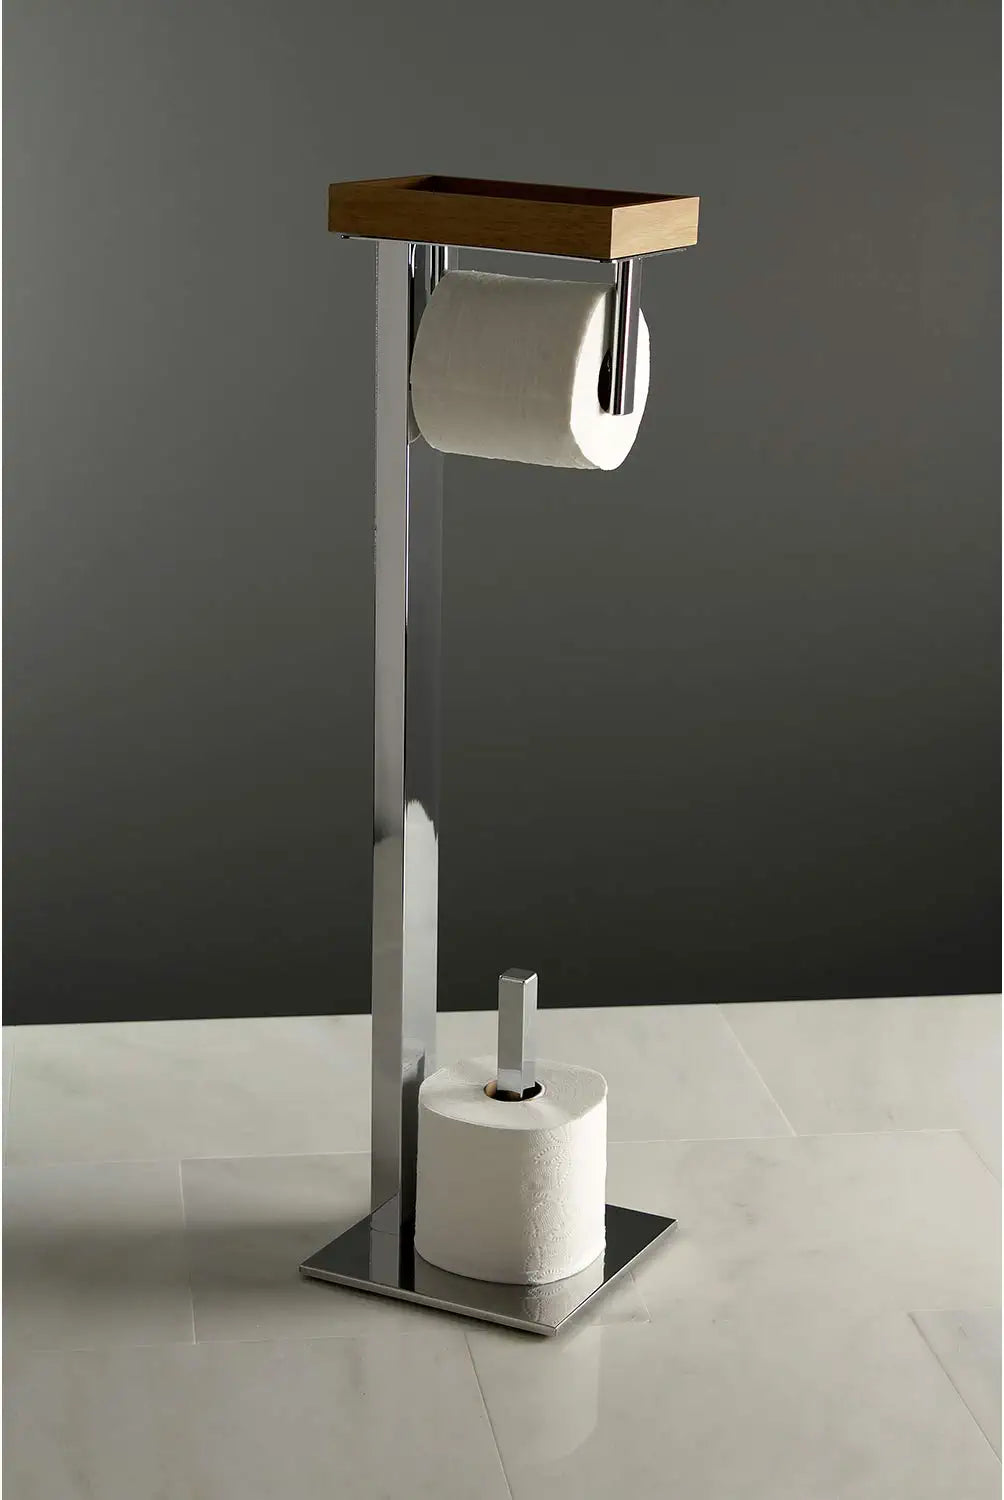 Kingston Brass SCC8501 Edenscape Toilet Paper Holder, Polished Chrome